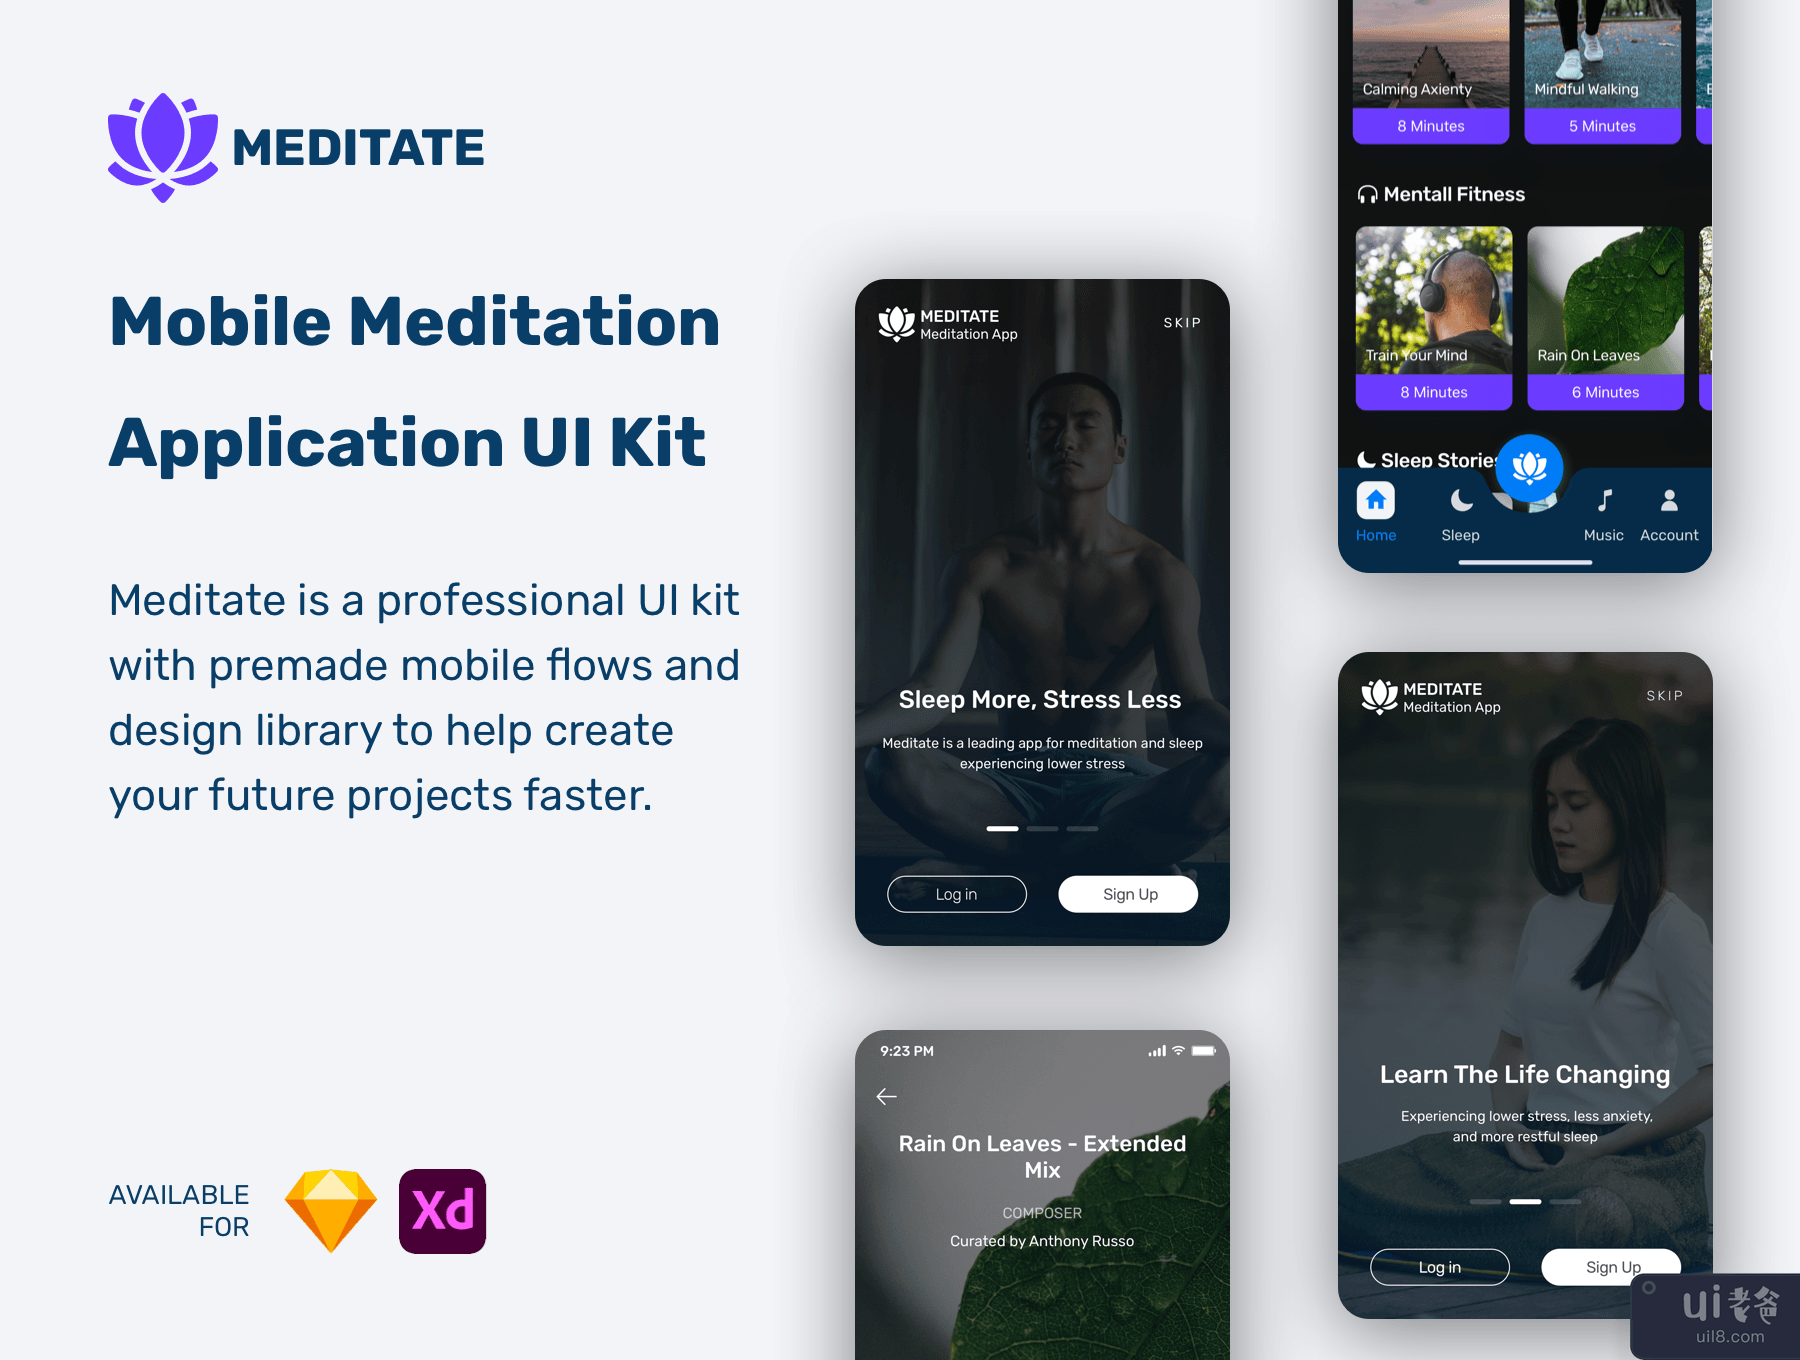 冥想 - 移动冥想应用程序 UI 工具包(Meditate - Mobile Meditation Application UI Kit)插图7